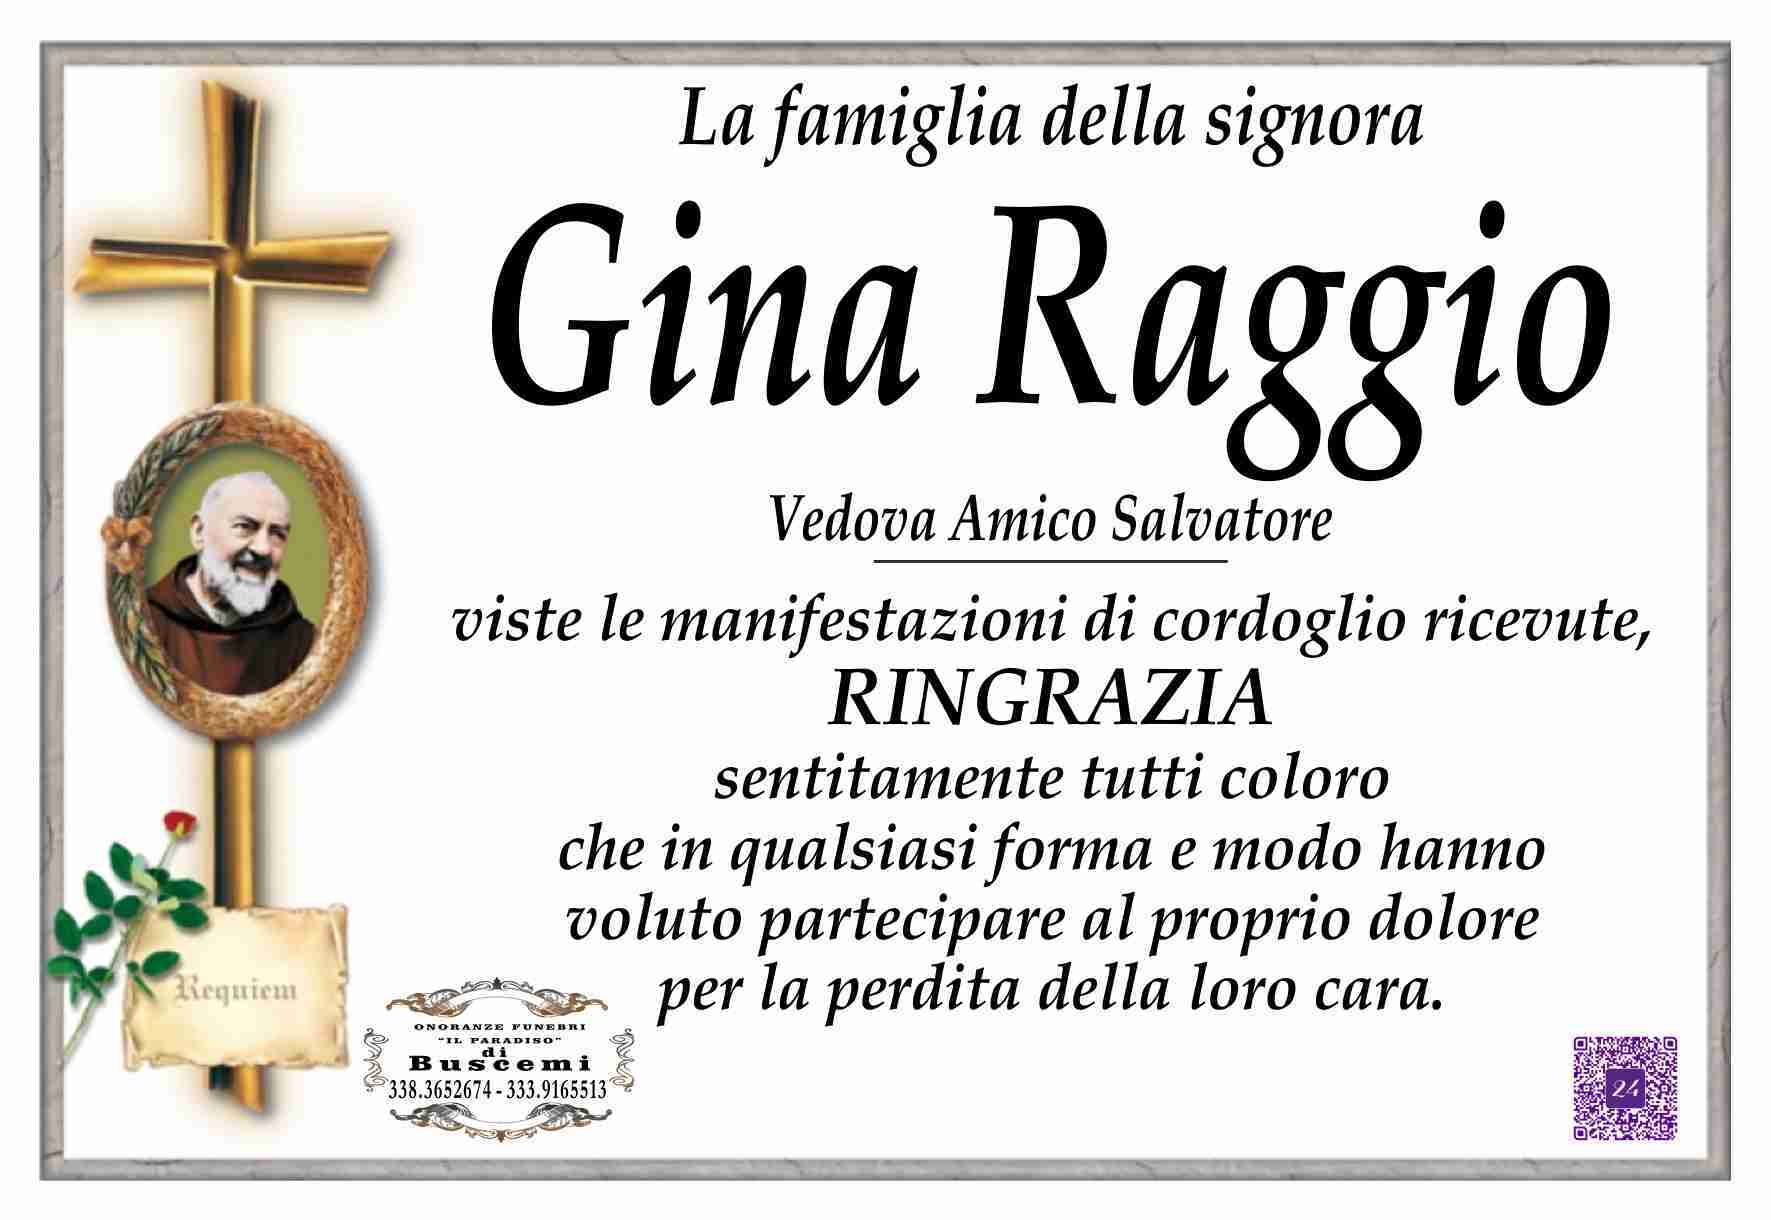 Luigia Raggio